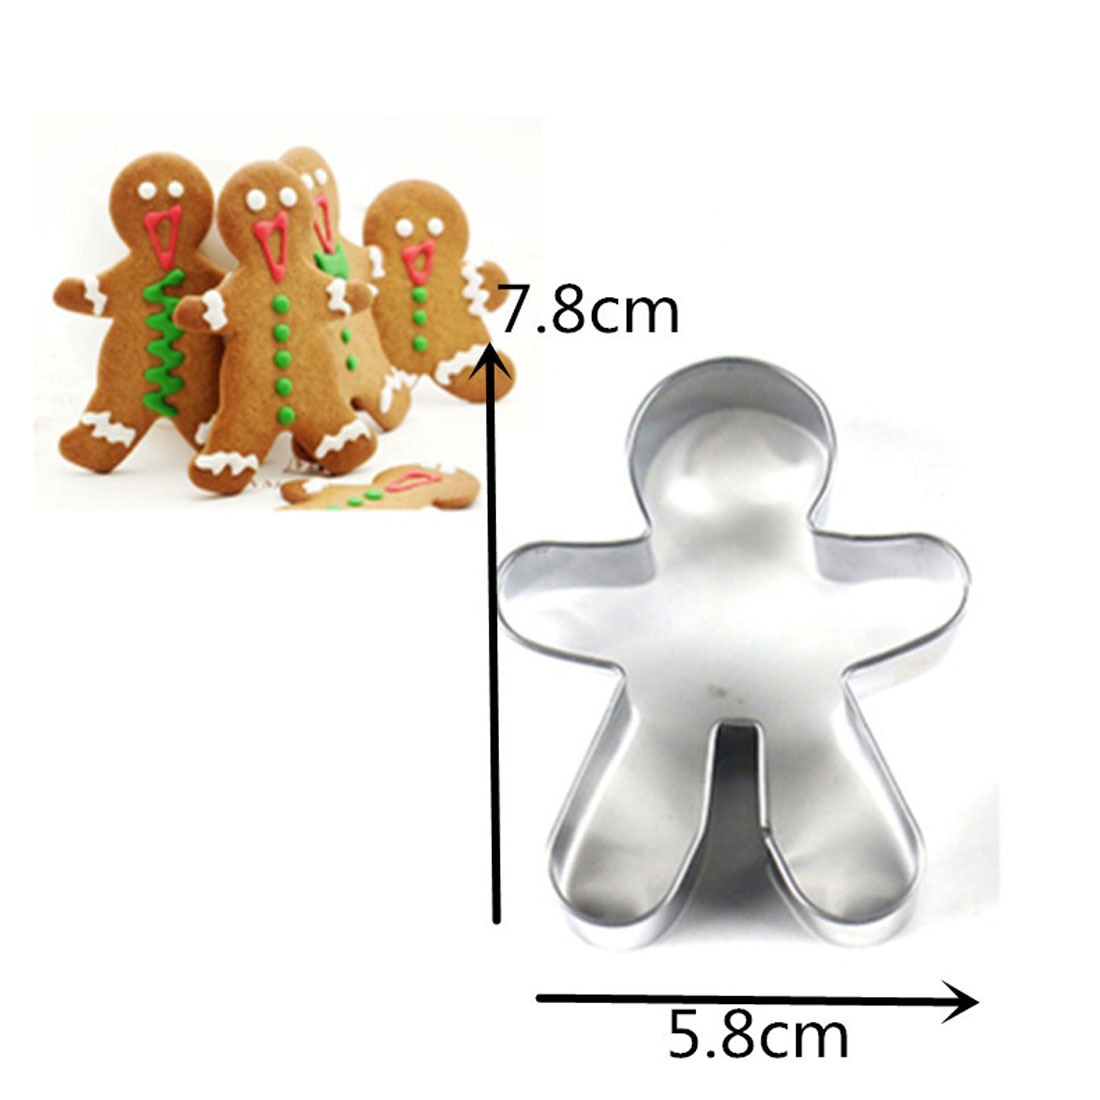 Sdr Kerst Cookie Cutter Gereedschap Aluminium Gingerbread Mannen Vormige Biscuit Mold Keuken Cake Decorating Gereedschap